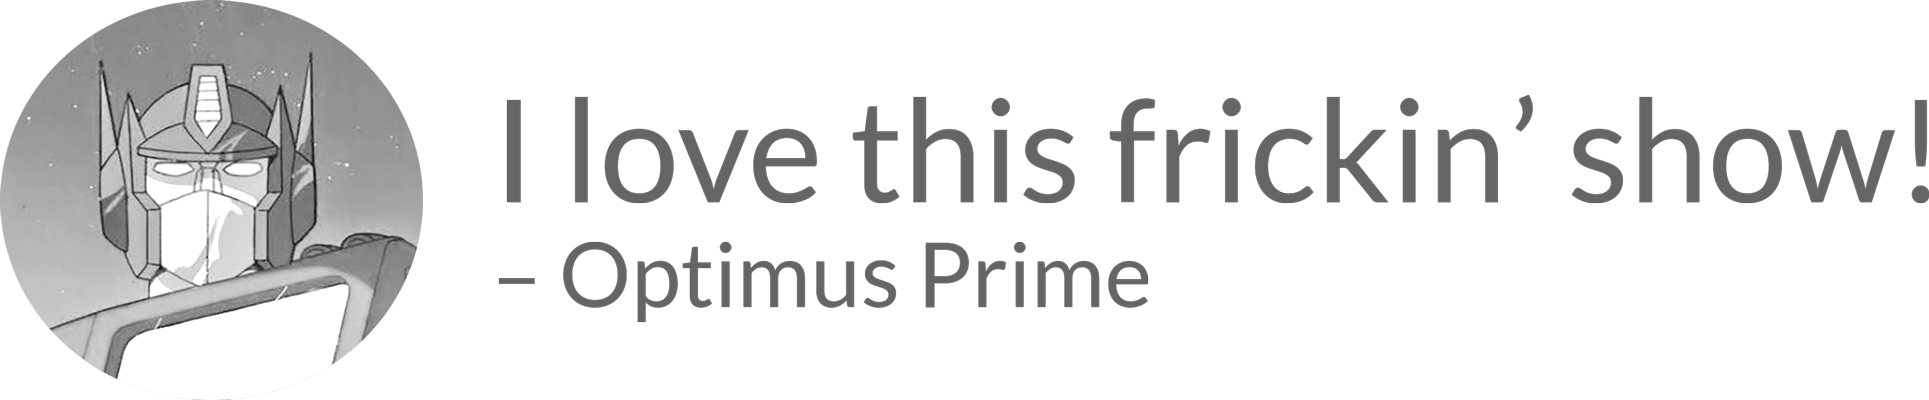 Image: portrait of Optimus Prime